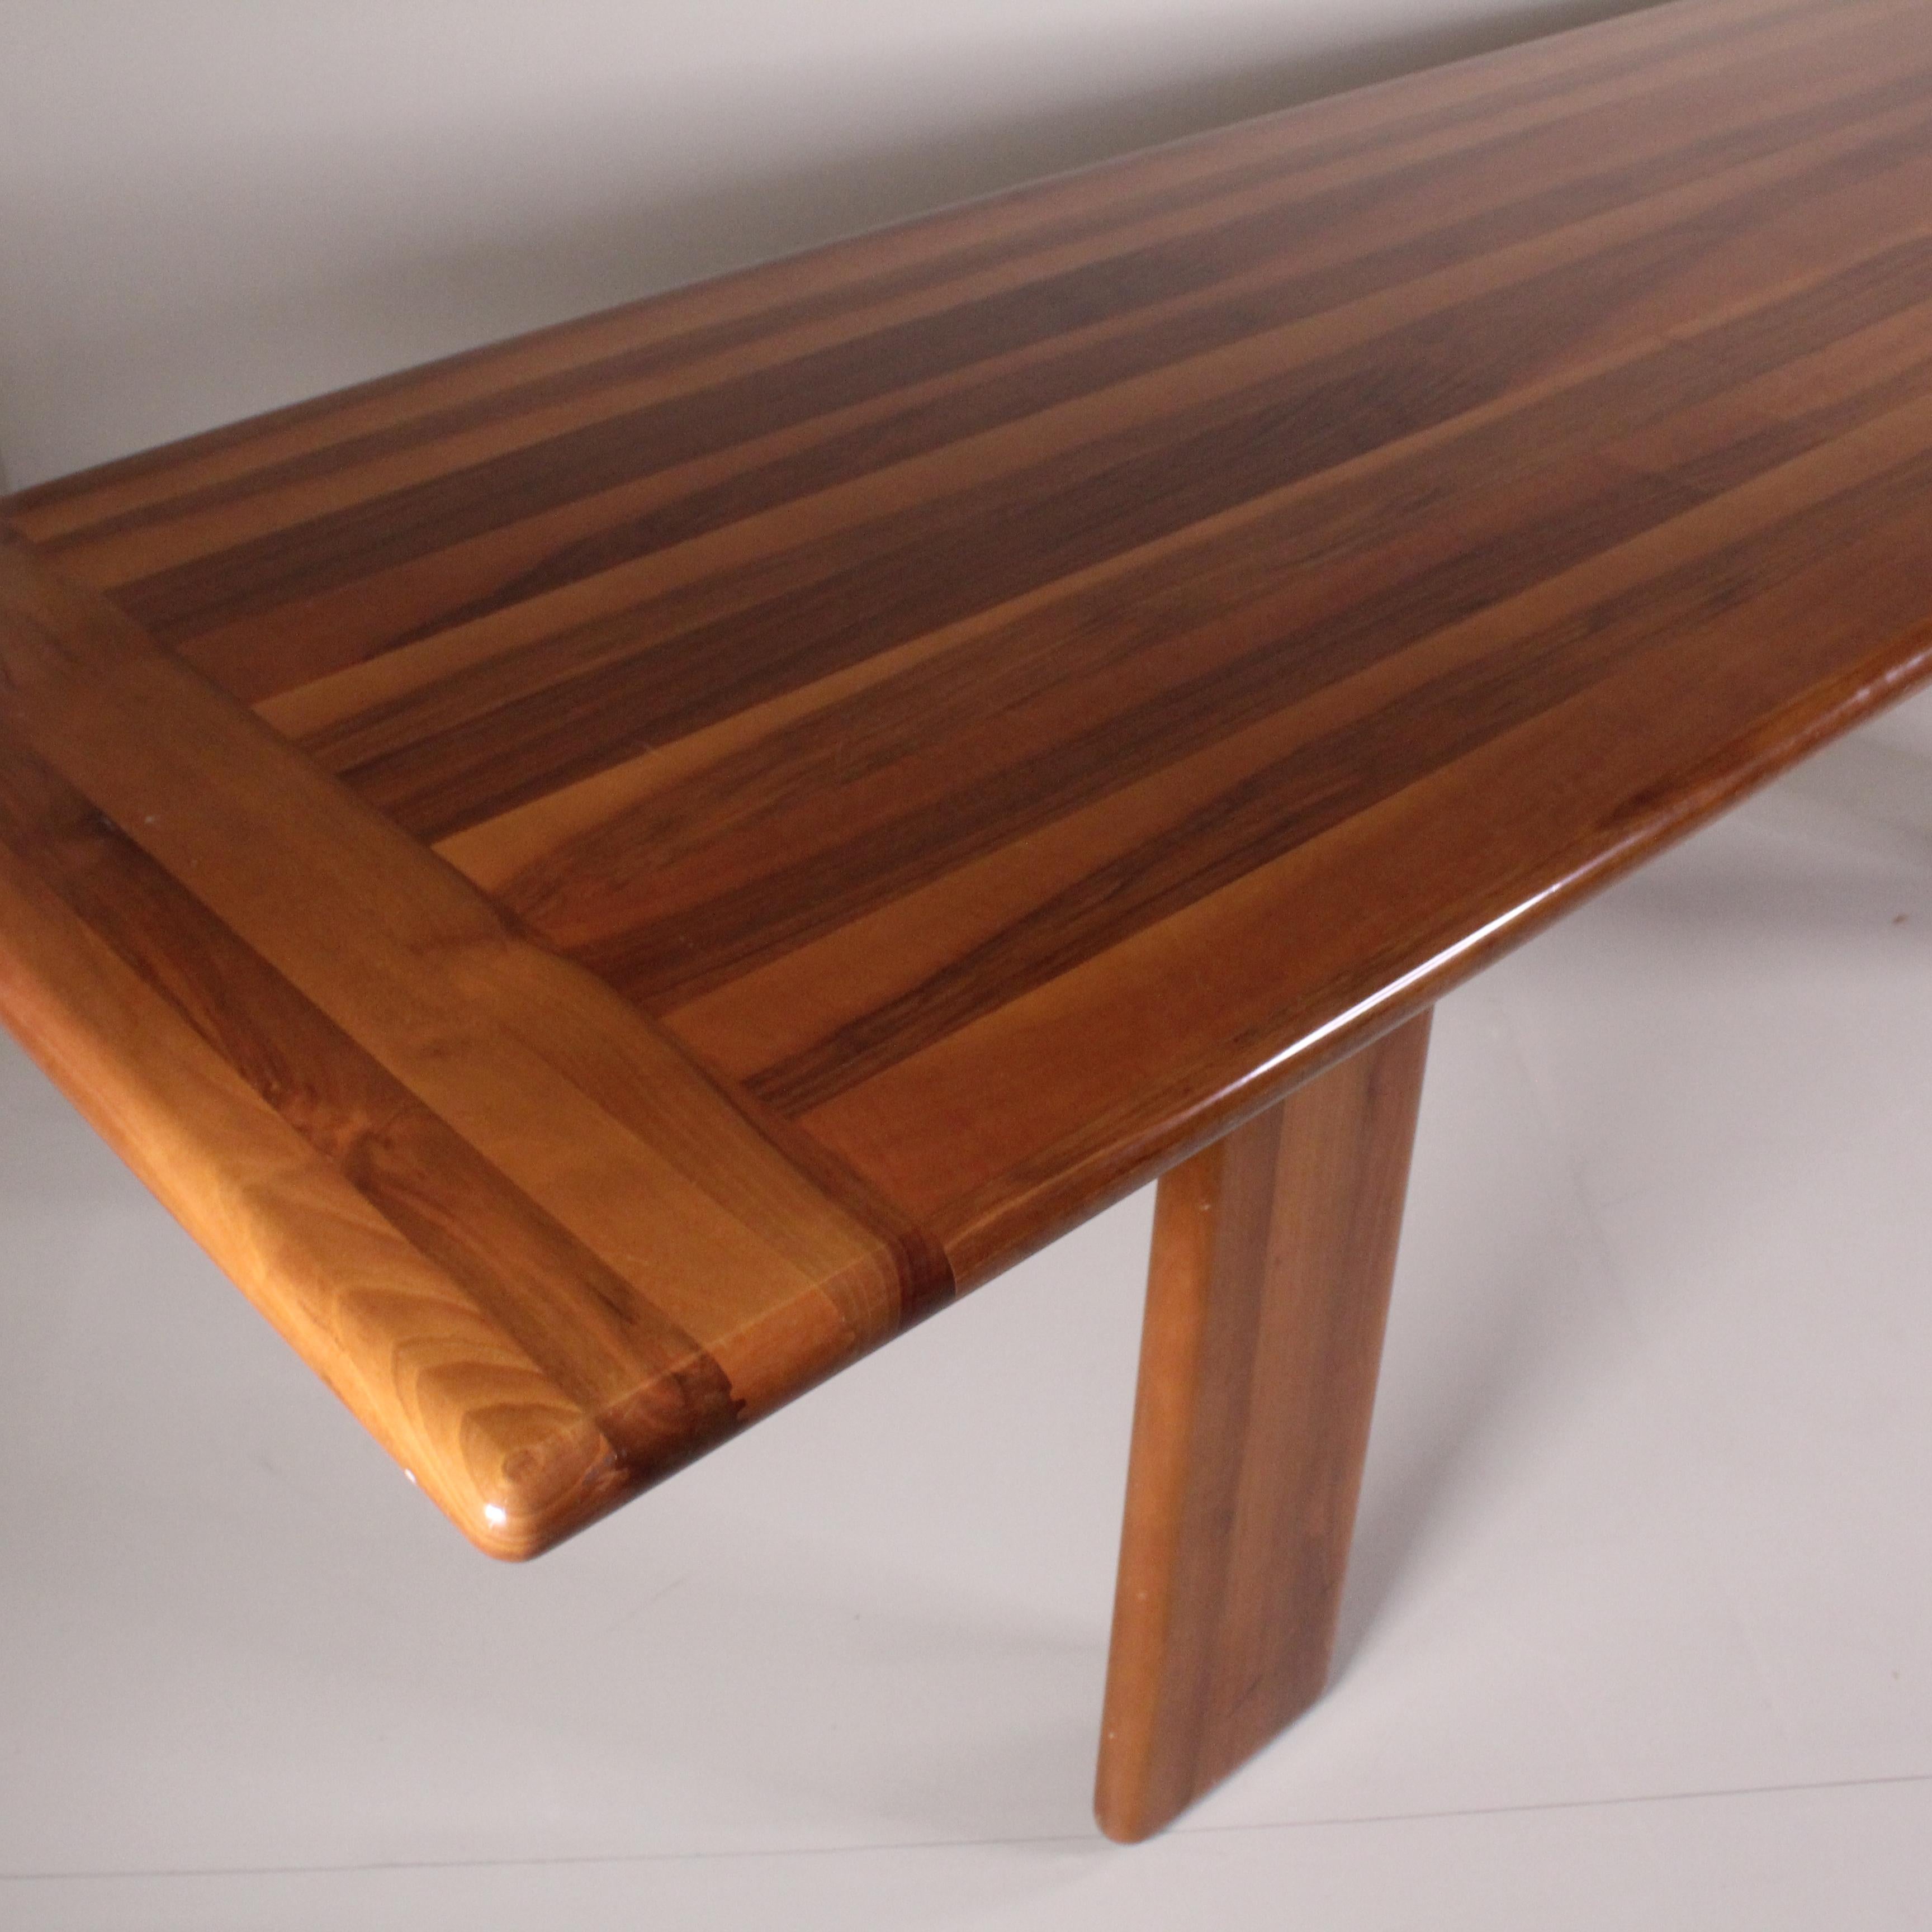 Questo tavolo in legno firmato Mario Marenco per MobilGirgi, un’icona degli anni ’60 che incarna lo spirito dell’epoca. Realizzato con maestria artigianale e materiali di alta qualità, questo tavolo presenta linee pulite e un design minimalista che